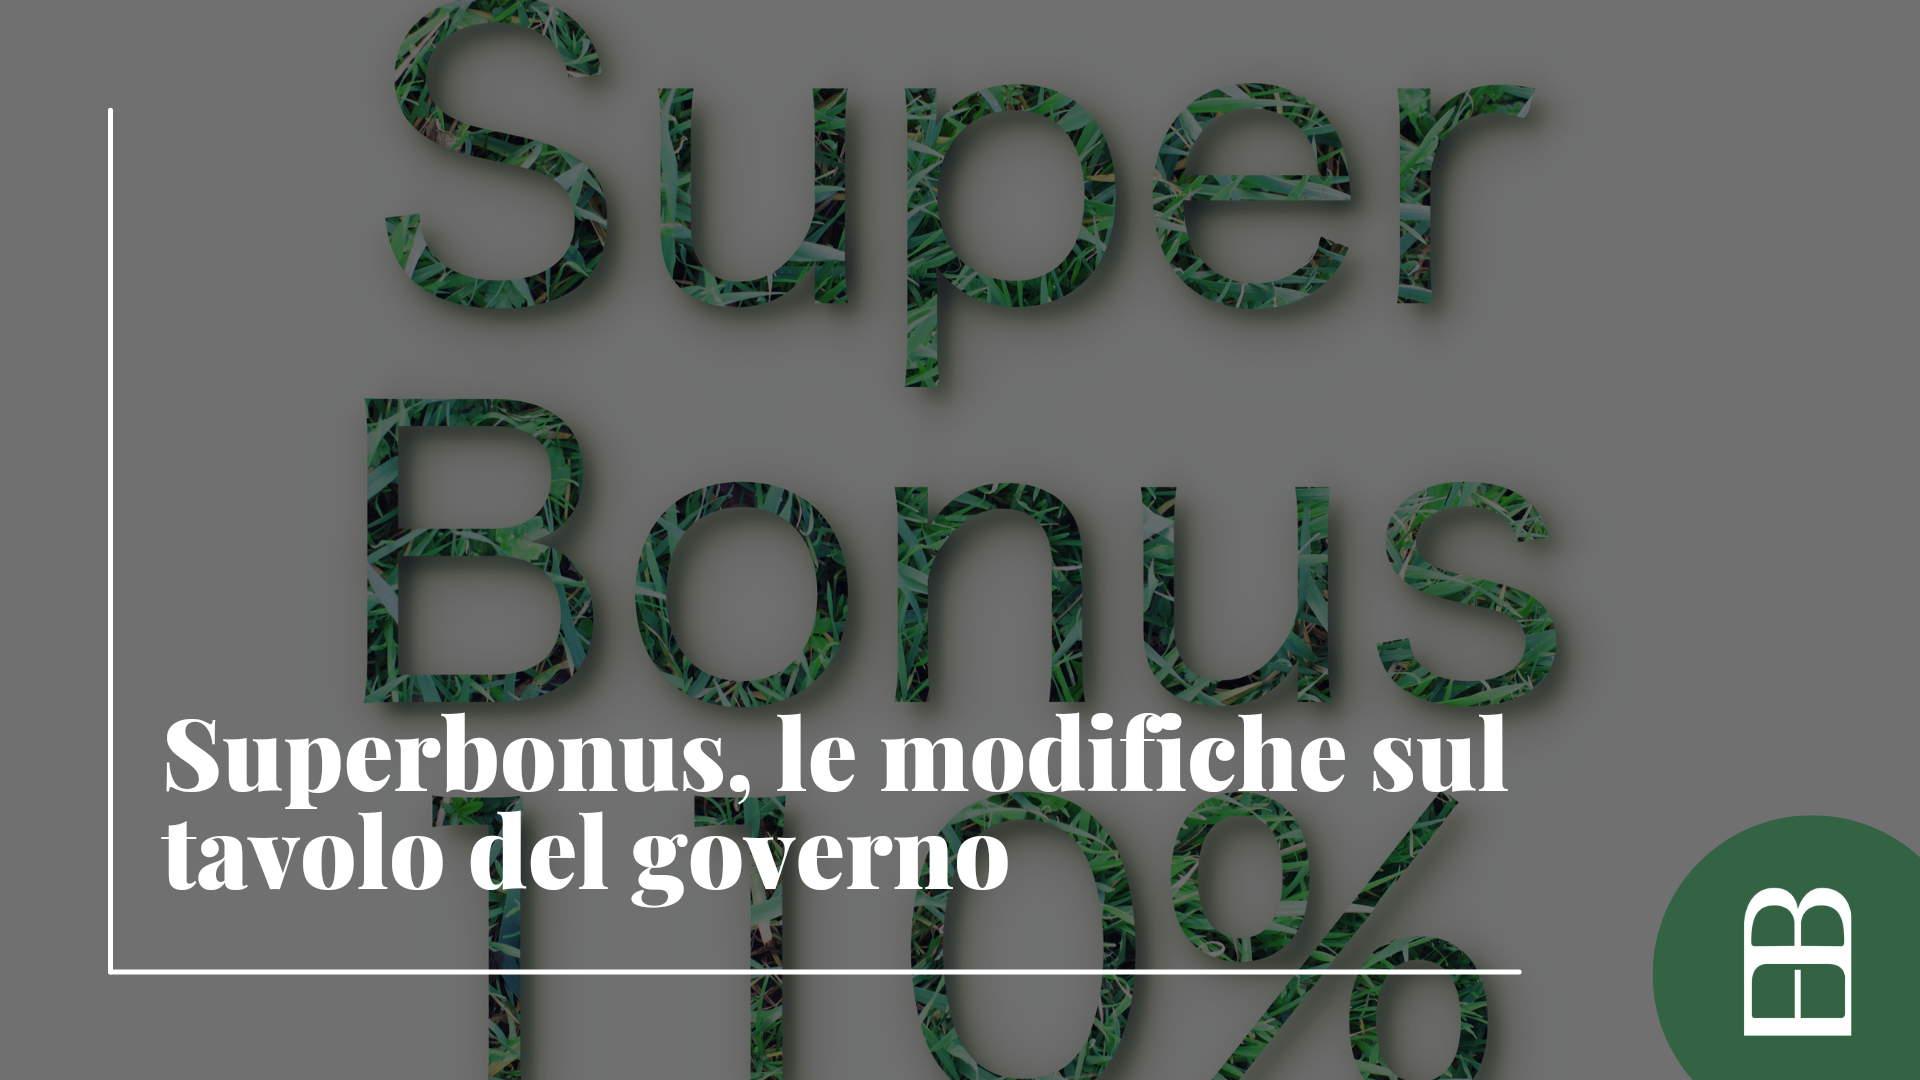 Superbonus, le modifiche sul tavolo del governo